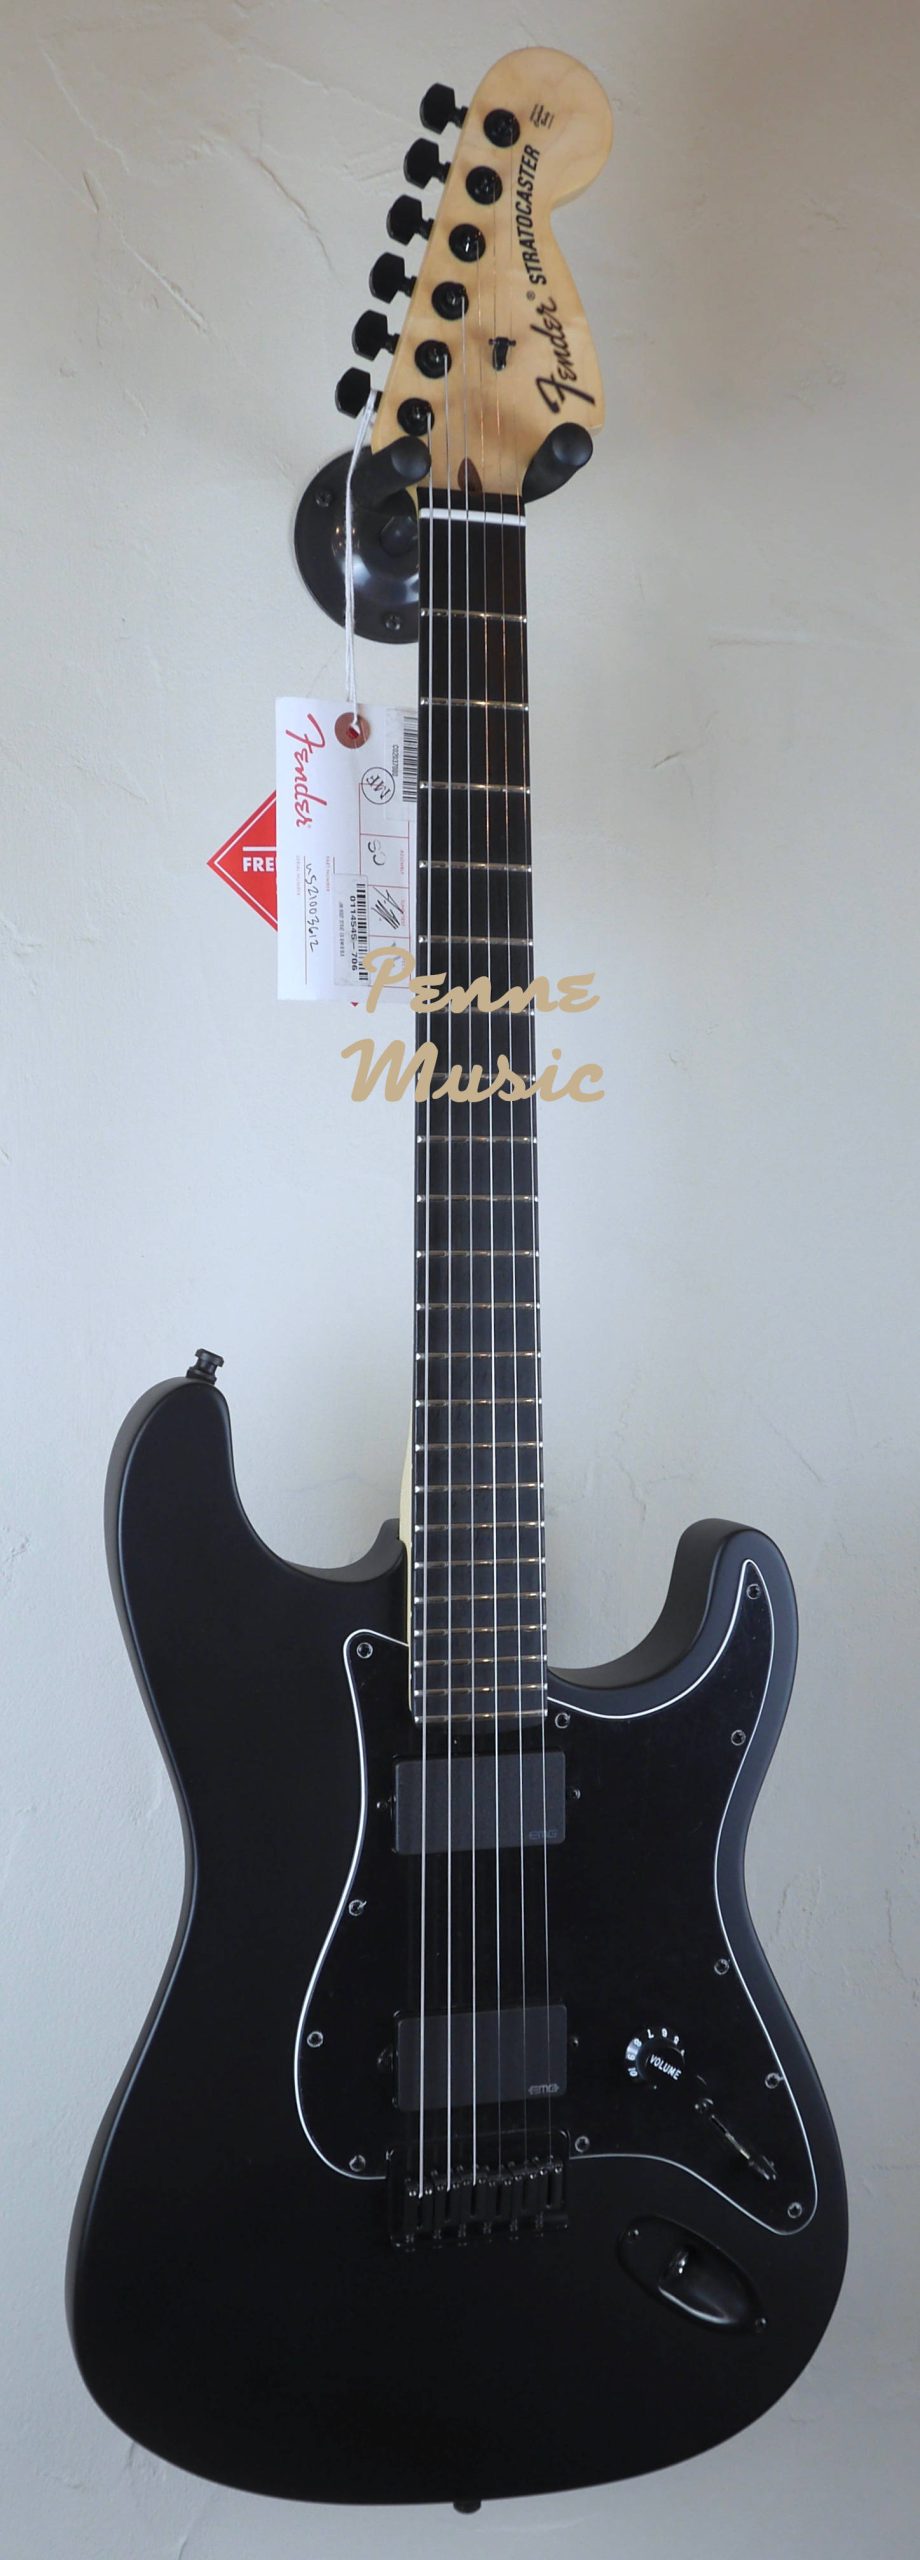 Fender Jim Root Stratocaster Flat Black 2